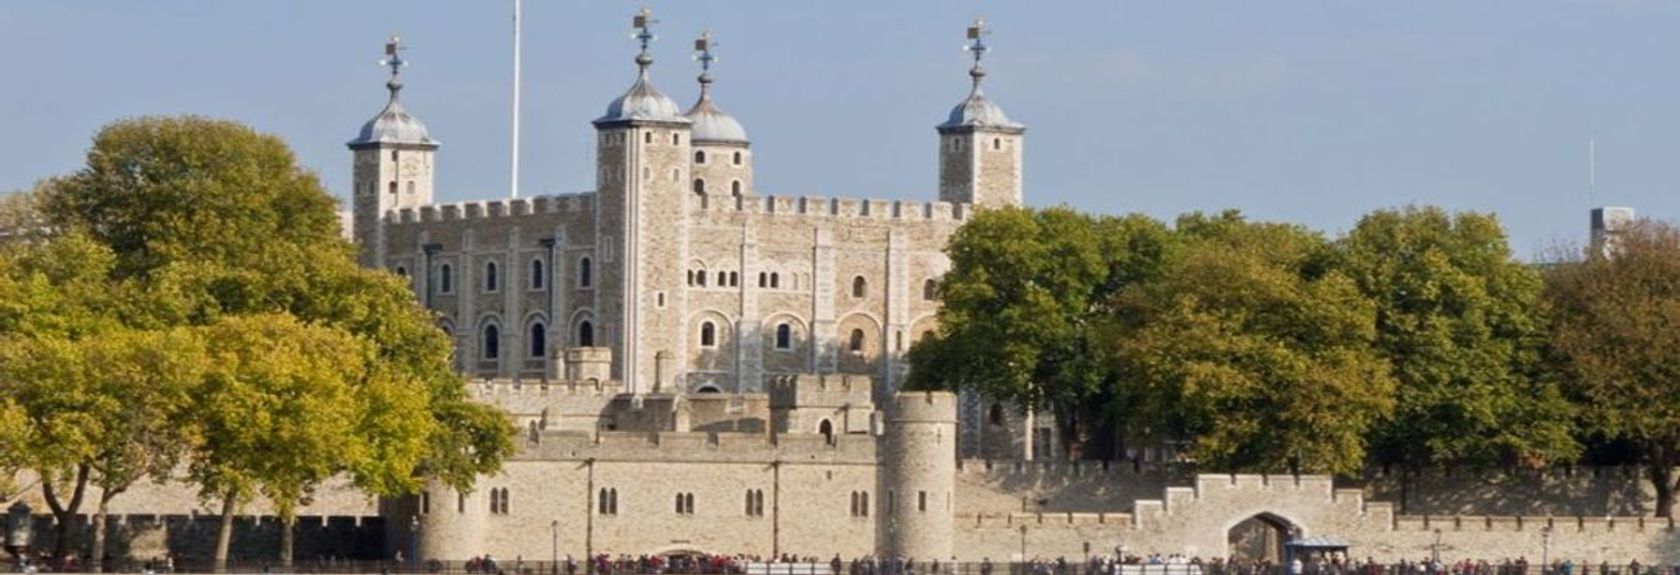 A Tower of London é o local histórico mais importante de Londres e também um dos edifícios mais antigos da cidade. Hoje em dia a Tower of London é um museu que é famoso principalmente pelas jóias da coroa da família real britânica que podem ser vistas lá